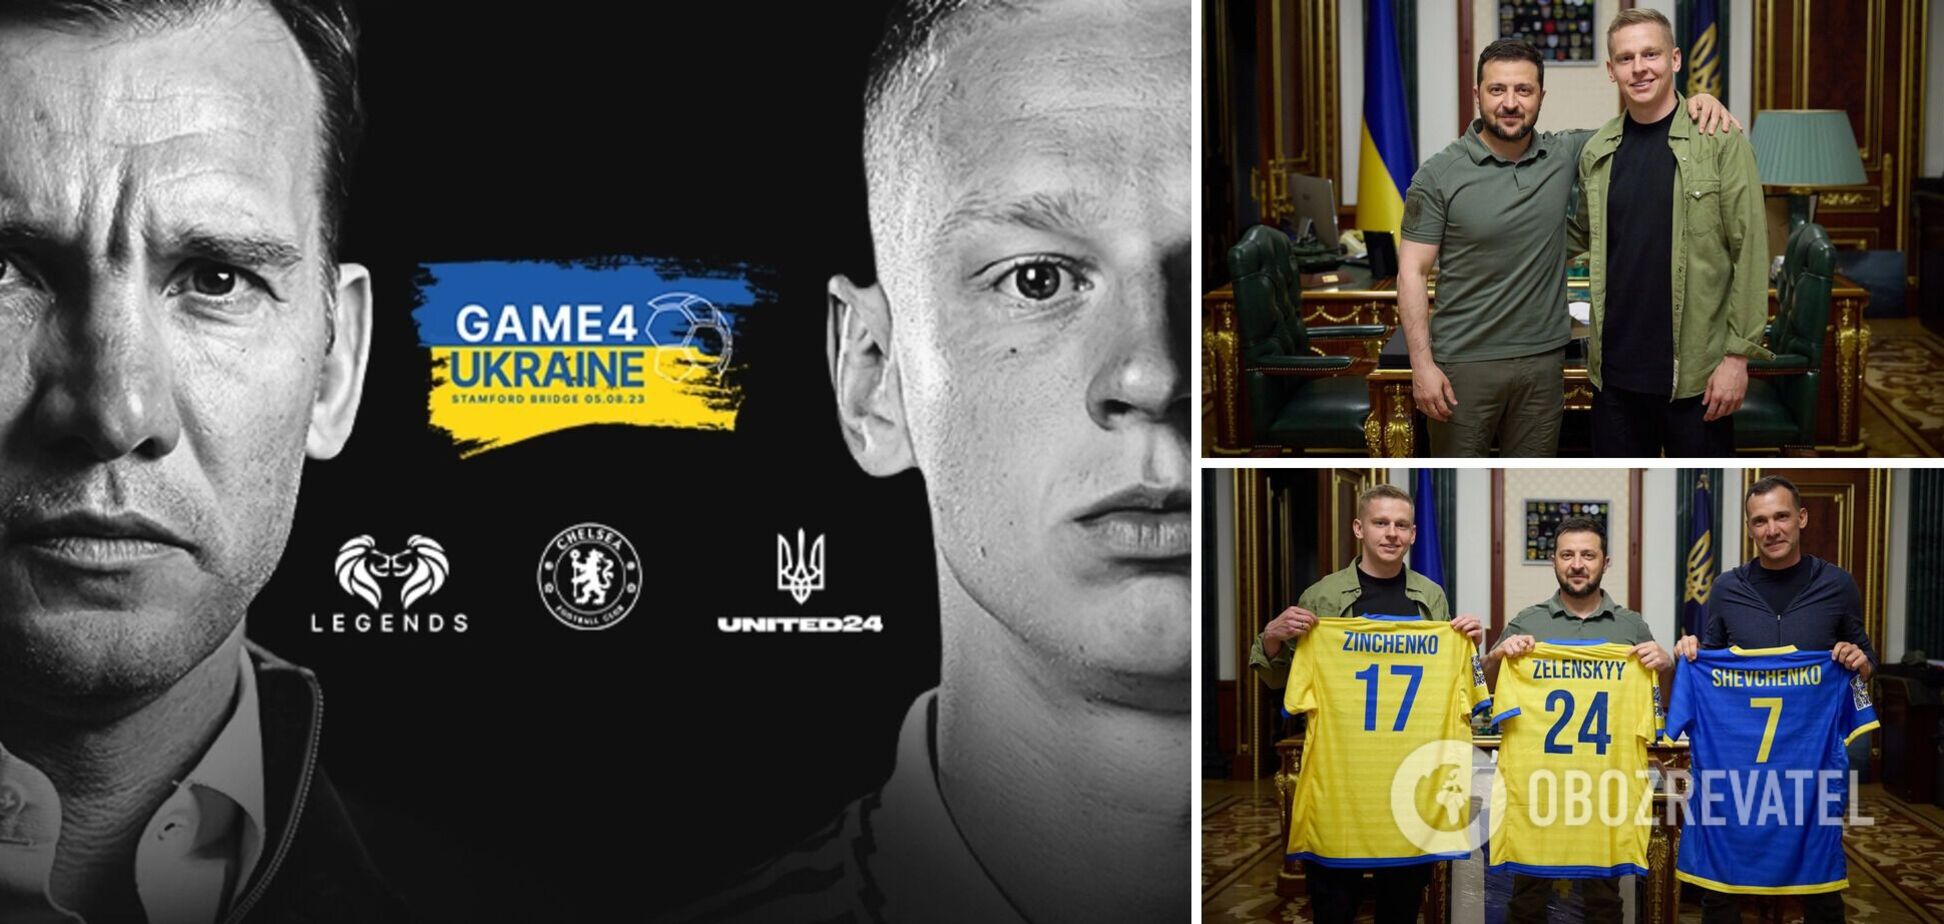 Где сейчас смотреть Game4Ukraine в поддержку Украины: расписание трансляций матча легенд мирового футбола